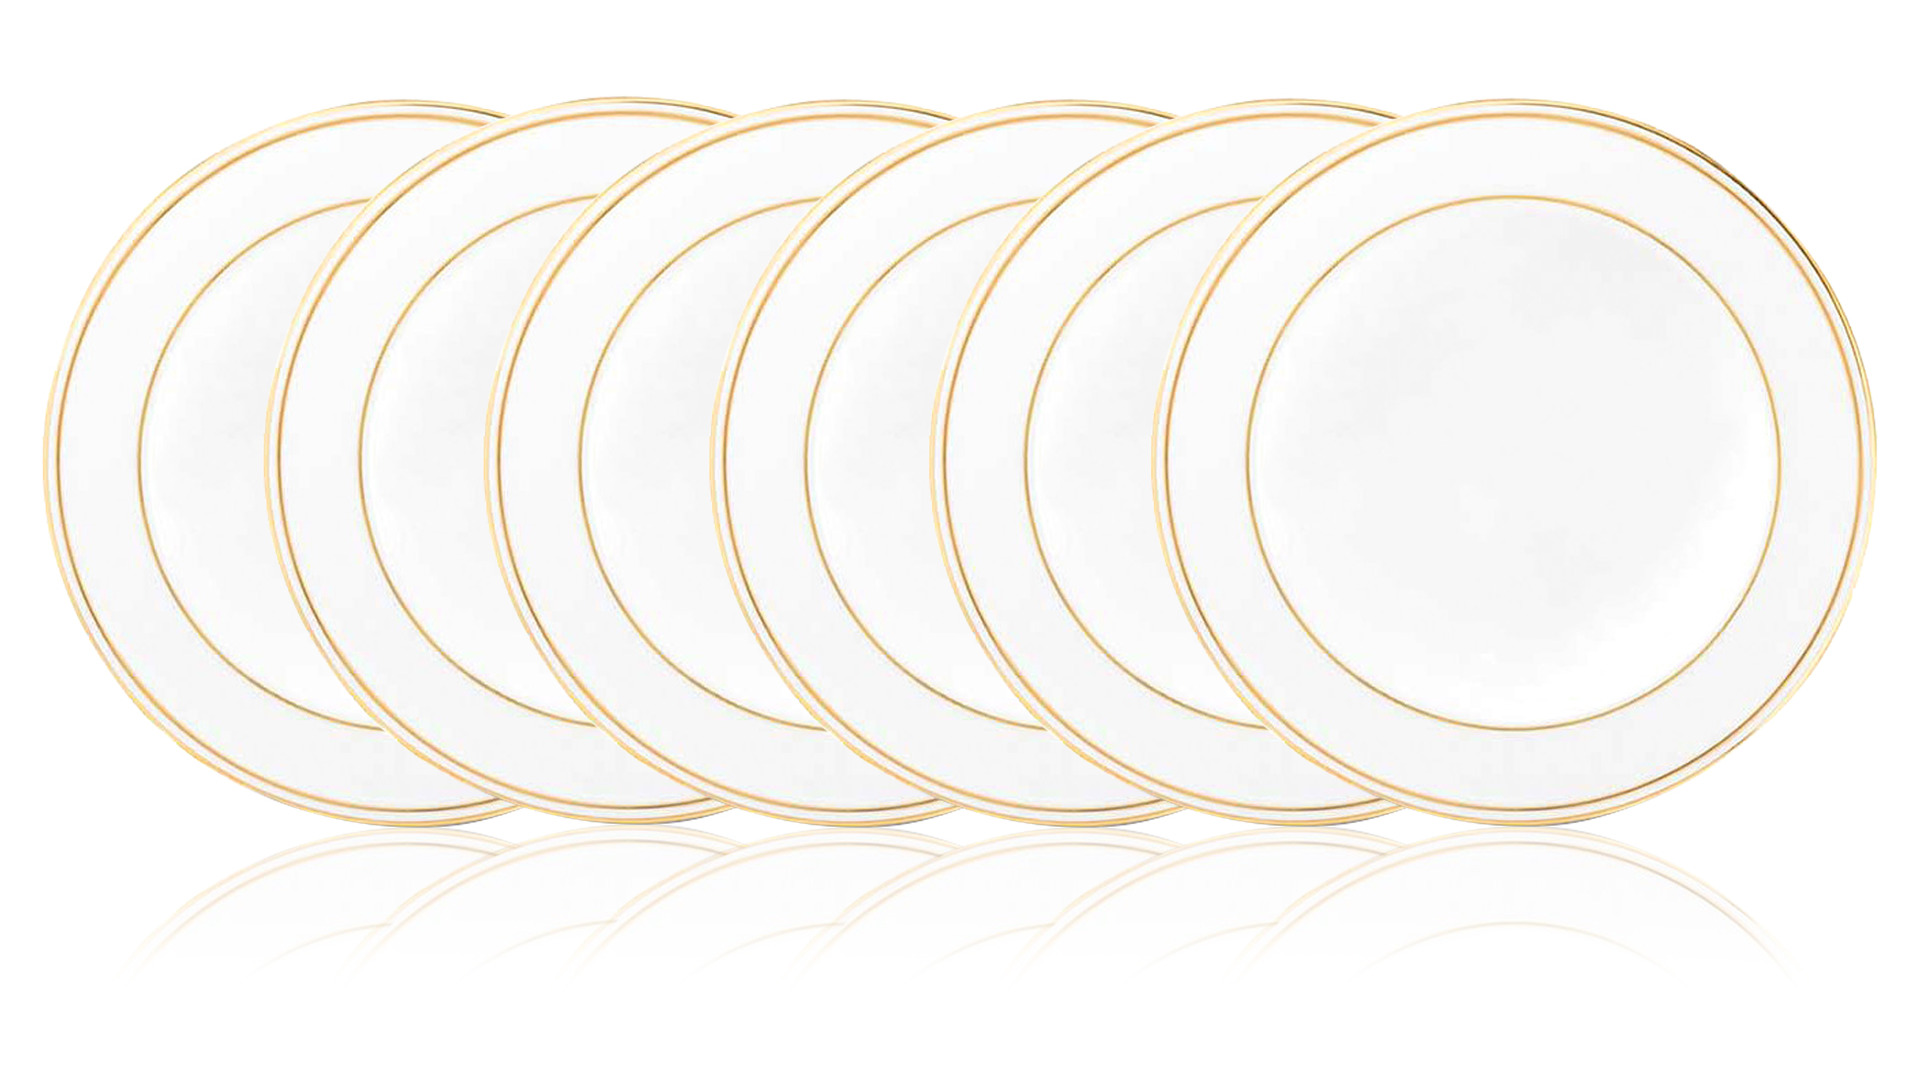 Набор тарелок суповых Lenox Федеральный, золотой кант 23 см, фарфор, 6 шт